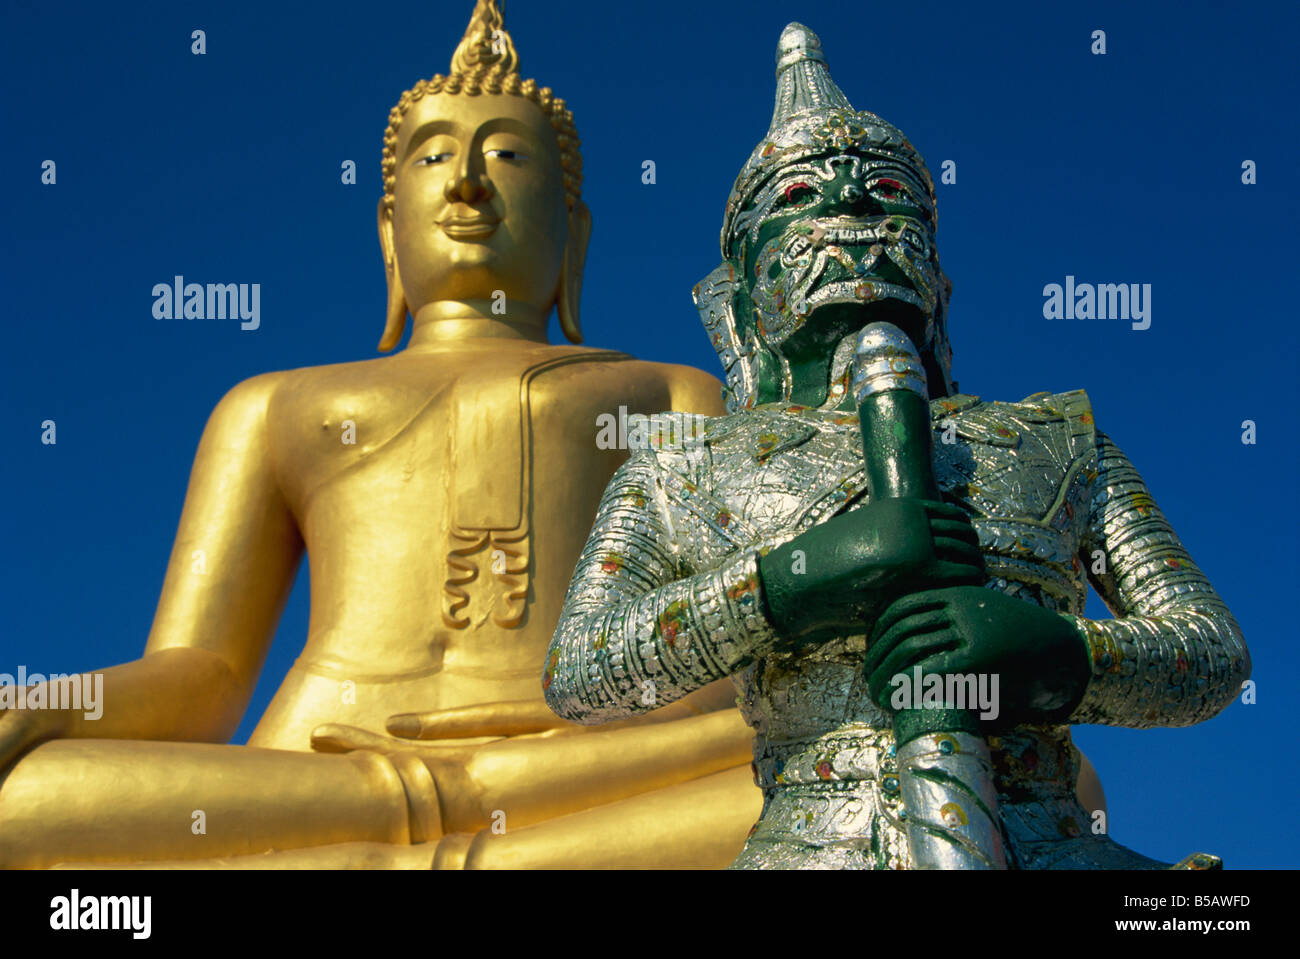 Statue géante de Bouddha et guard Koh Samui Thaïlande Asie Asie du sud-est Banque D'Images